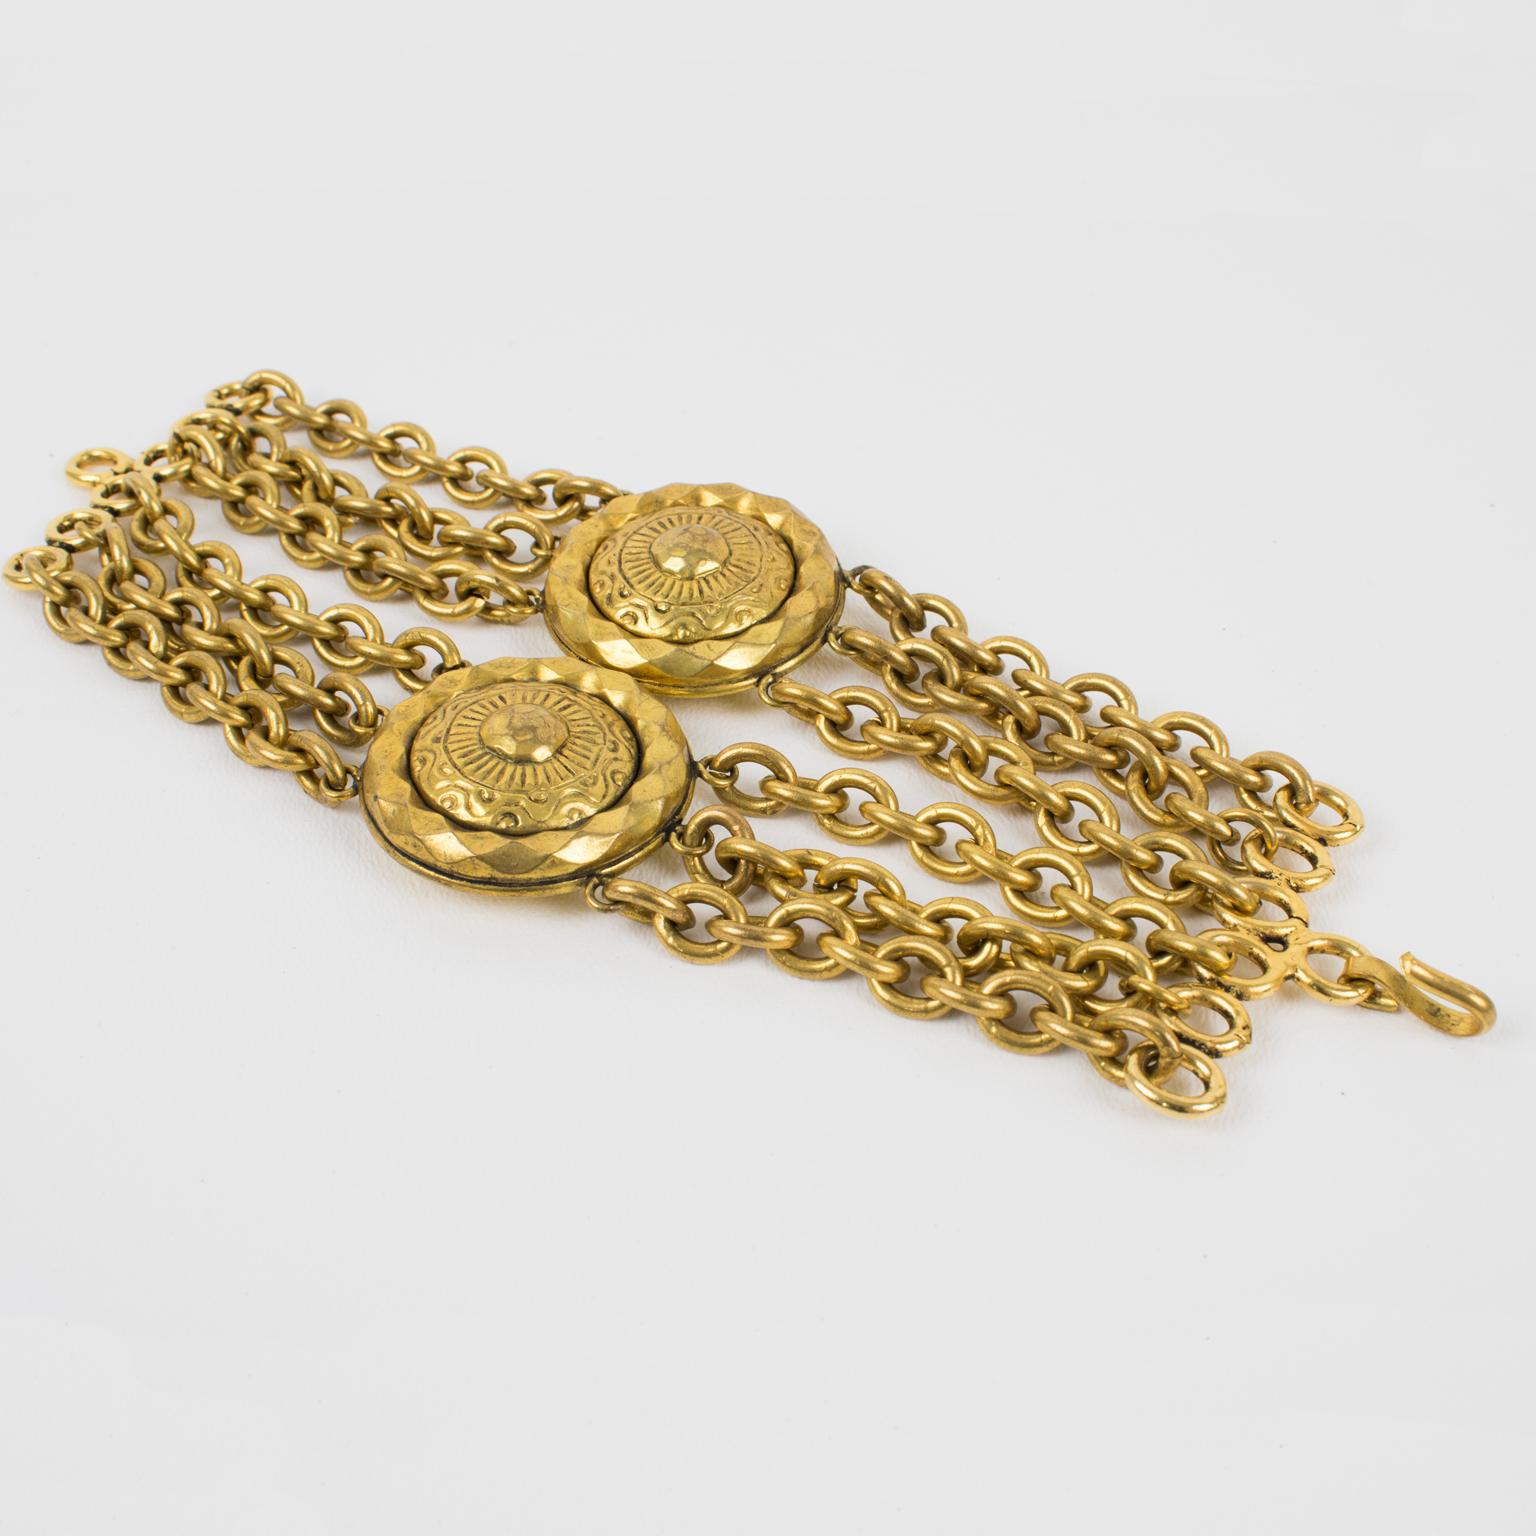 Ce superbe bracelet à maillons Mercedes Robirosa Paris présente un design multi-chaînes en métal doré antique de forme massive, complété par deux grands médaillons sculptés. Le bracelet est signé au dos avec le logo de la marque Robirosa. 
Le